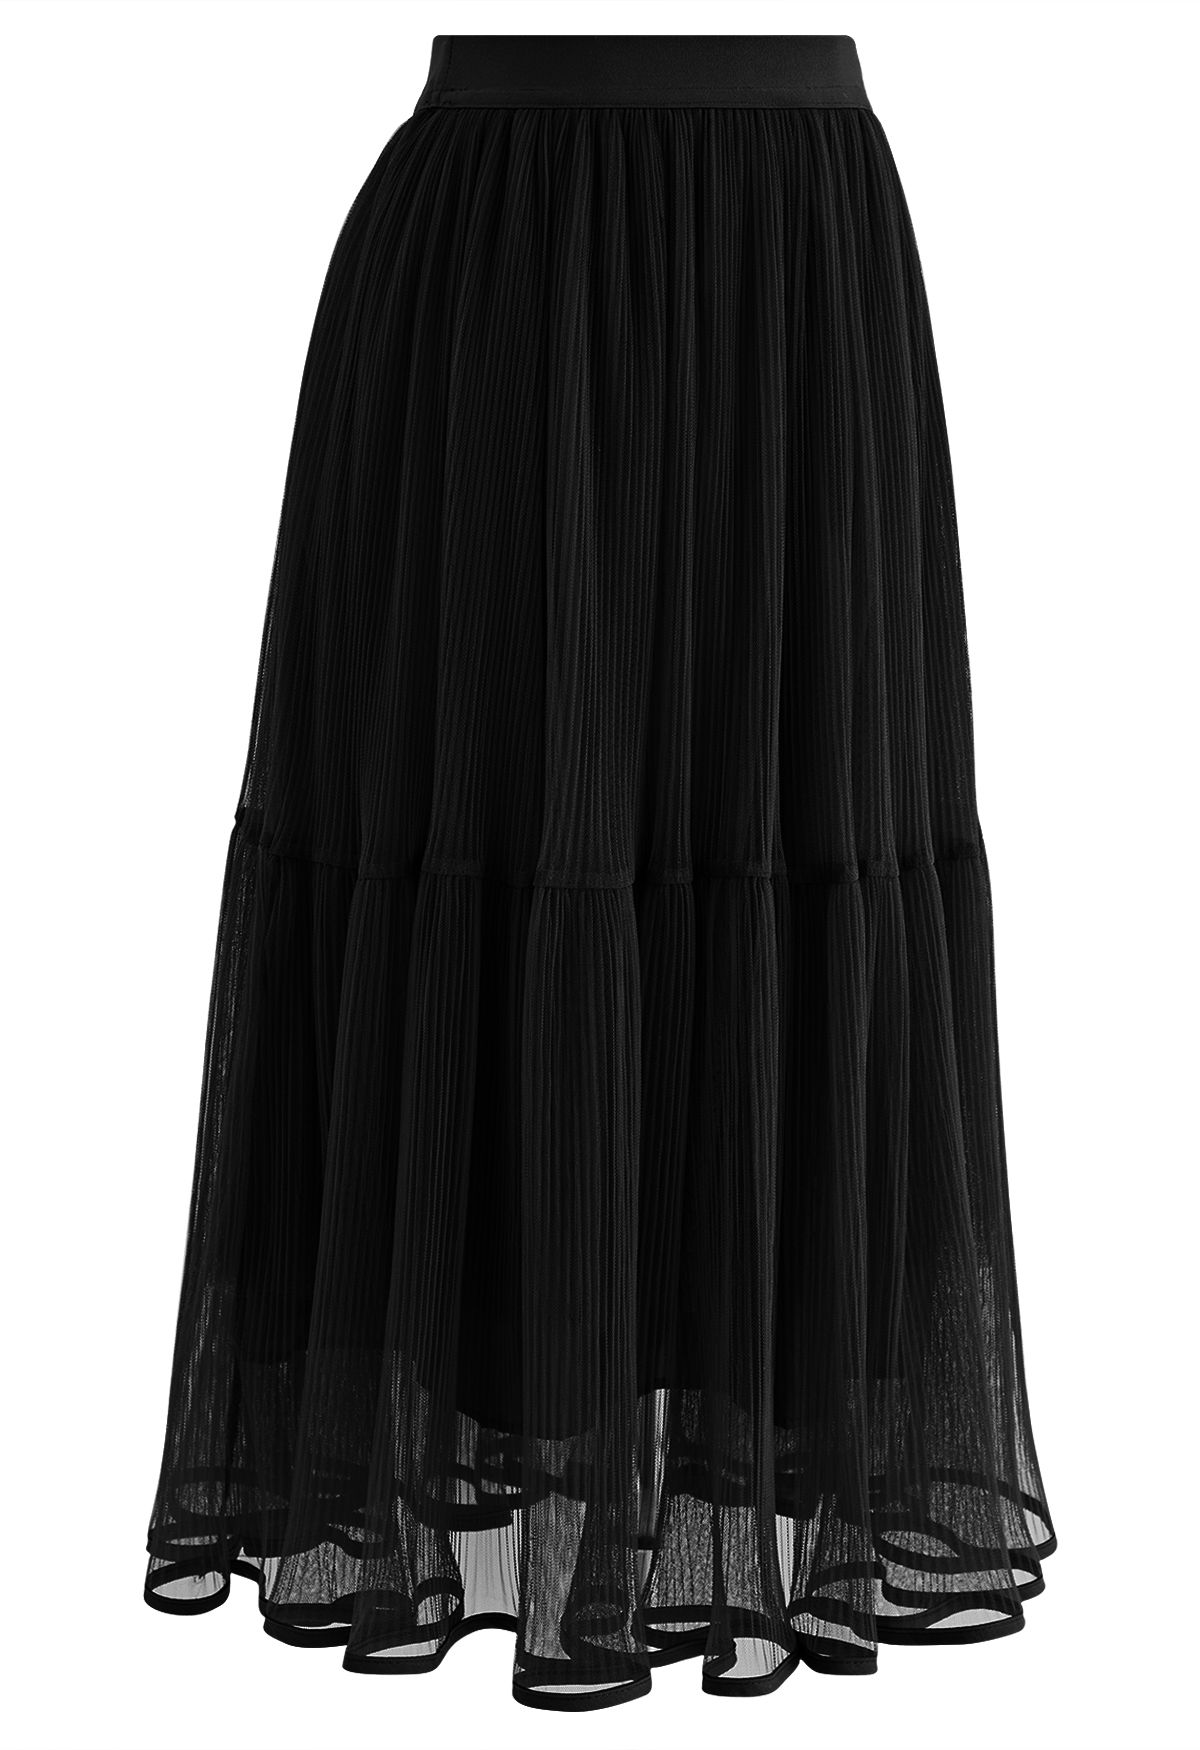 Fairy Plisse Mesh Tulle Midi Skirt in Black - Retro, Indie and Unique ...